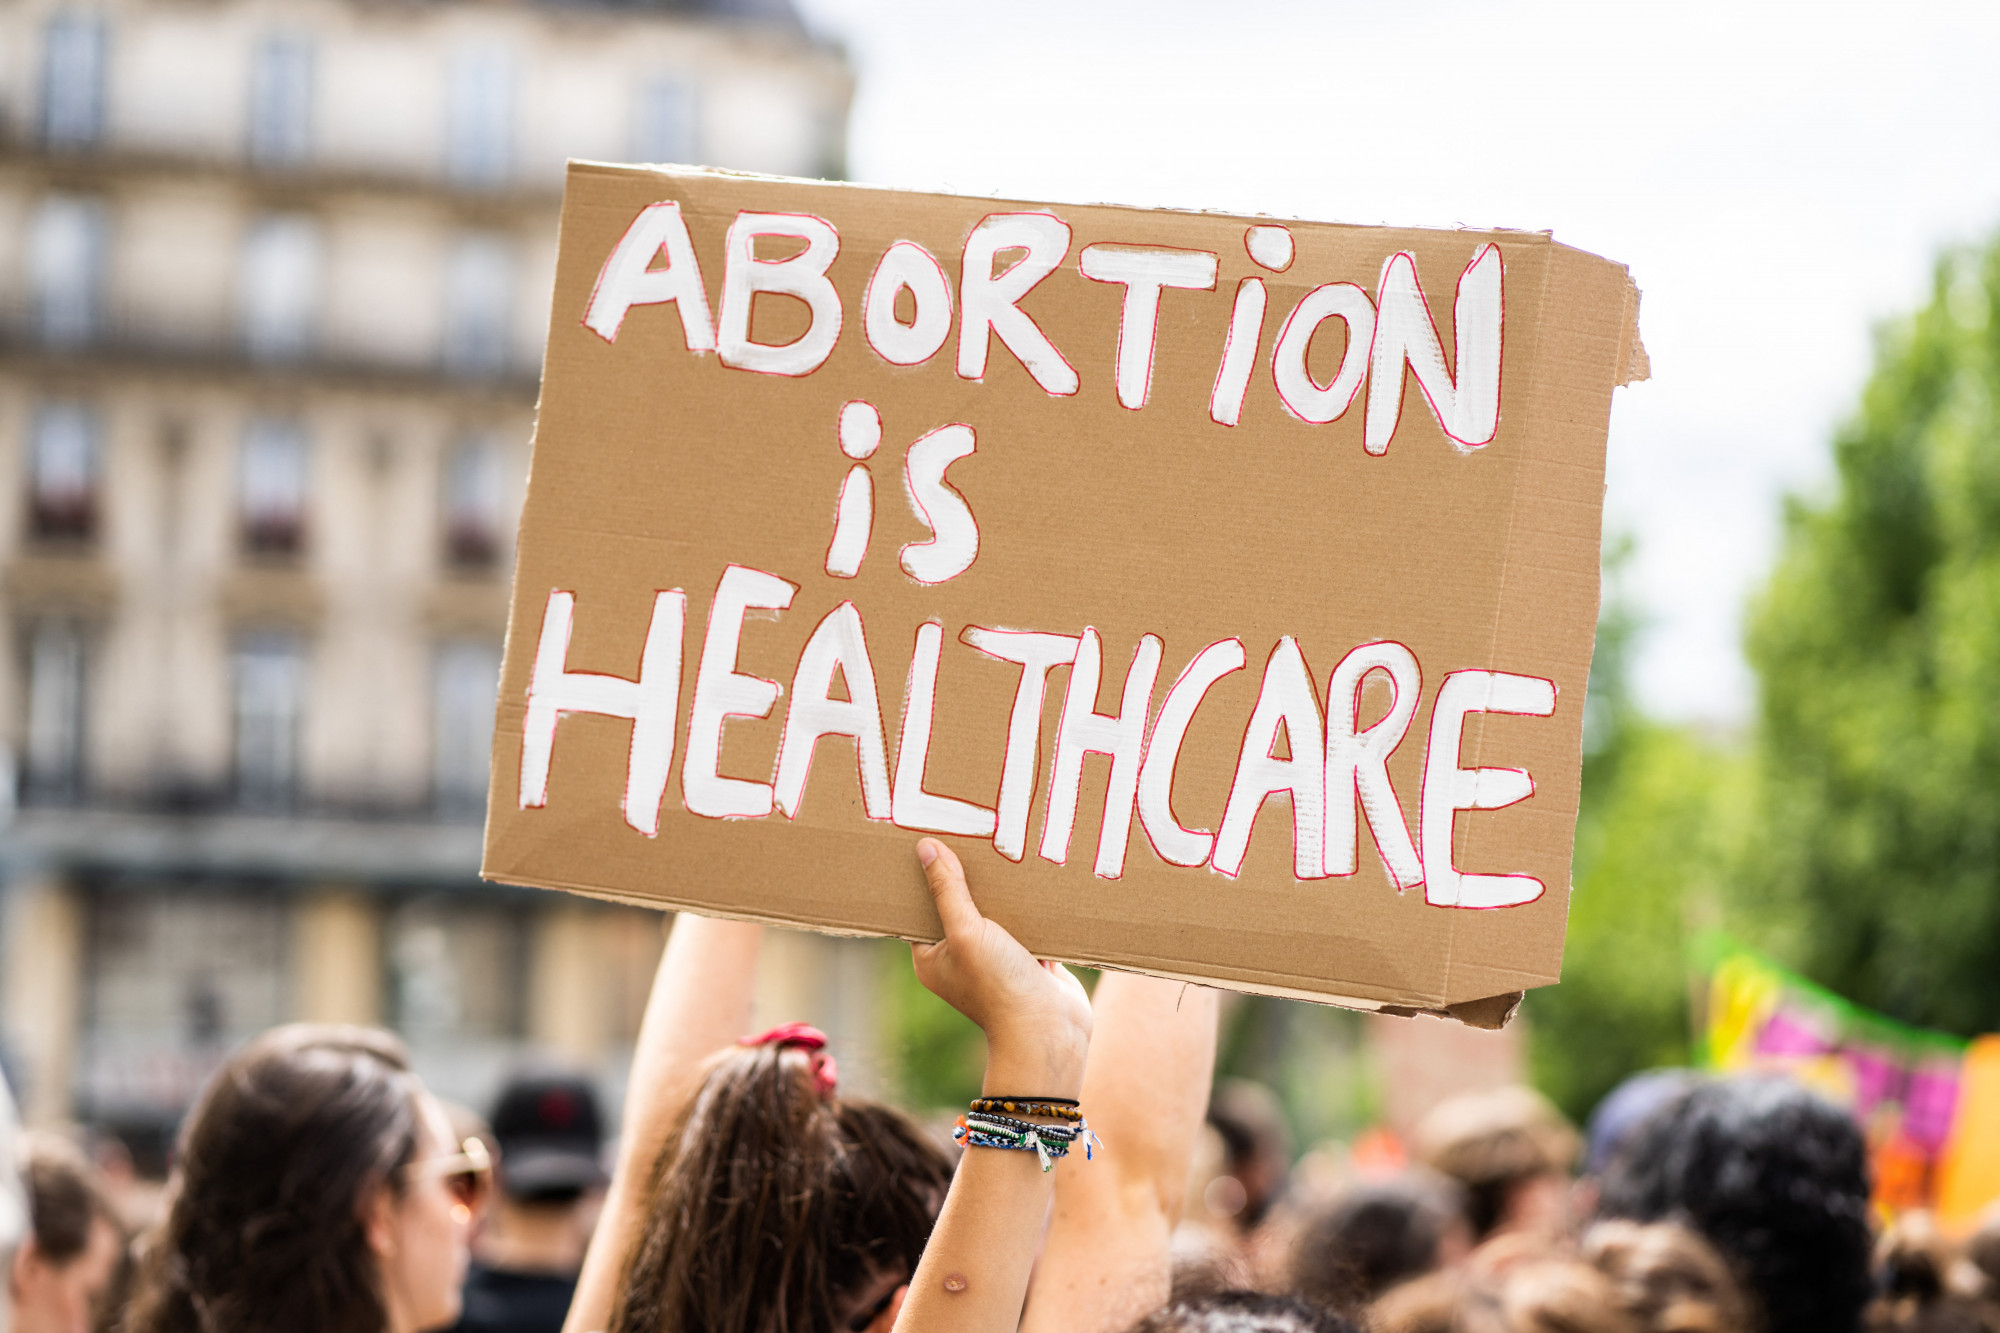 Abortuszhoz való hozzáférést biztosító rendeletet ír alá Joe Biden